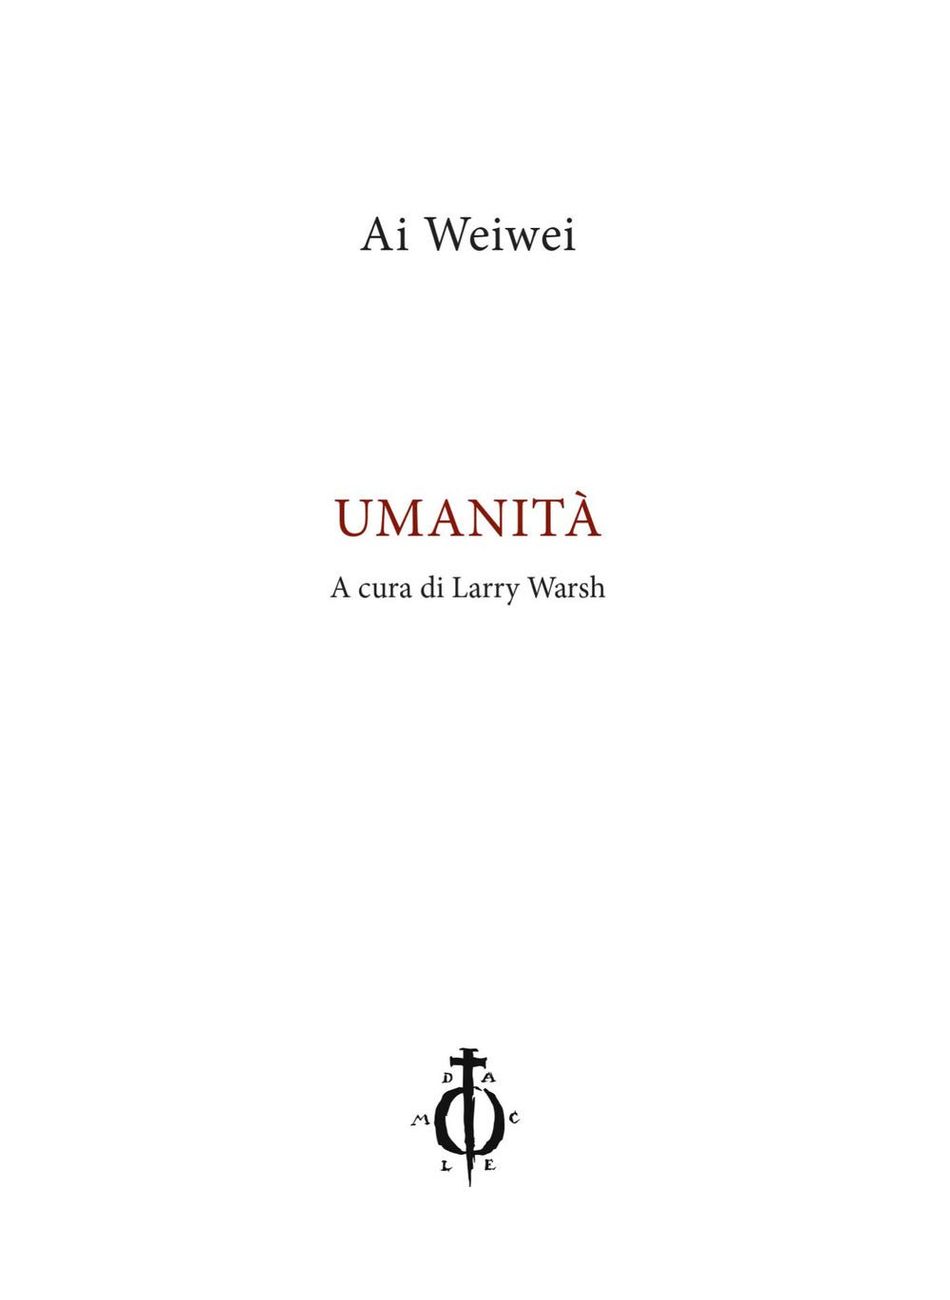 Ai Weiwei – Umanità (Damocle, Venezia 2019)